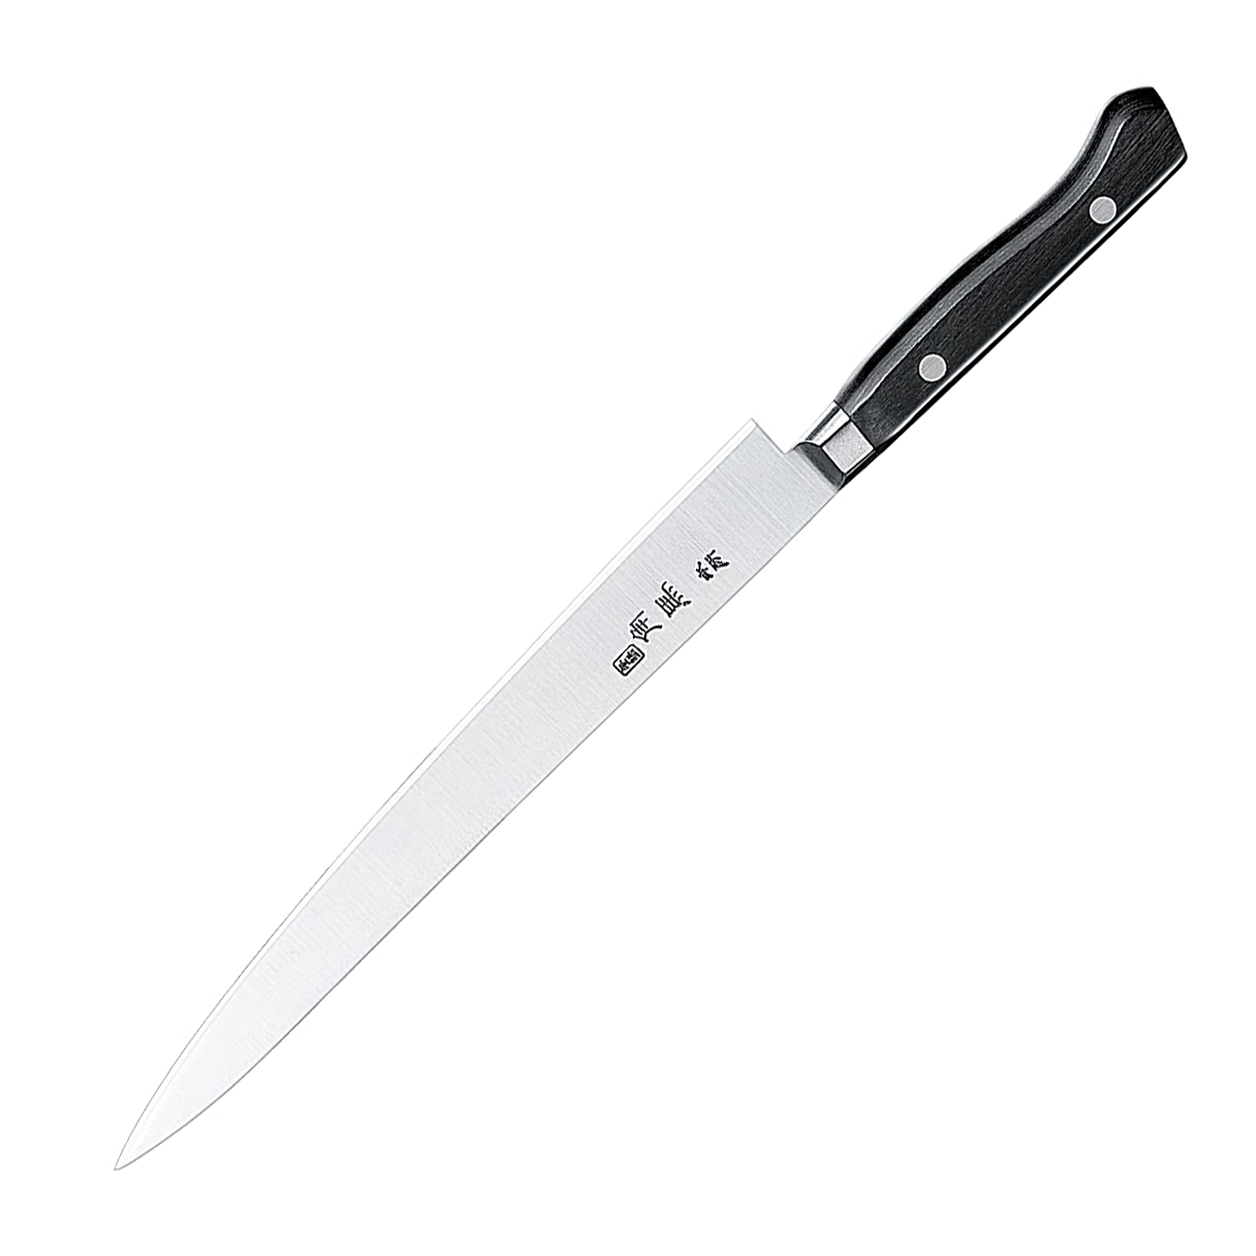 Нож кухонный филейный Shimomura, сталь DSR1K6, рукоять pakka wood